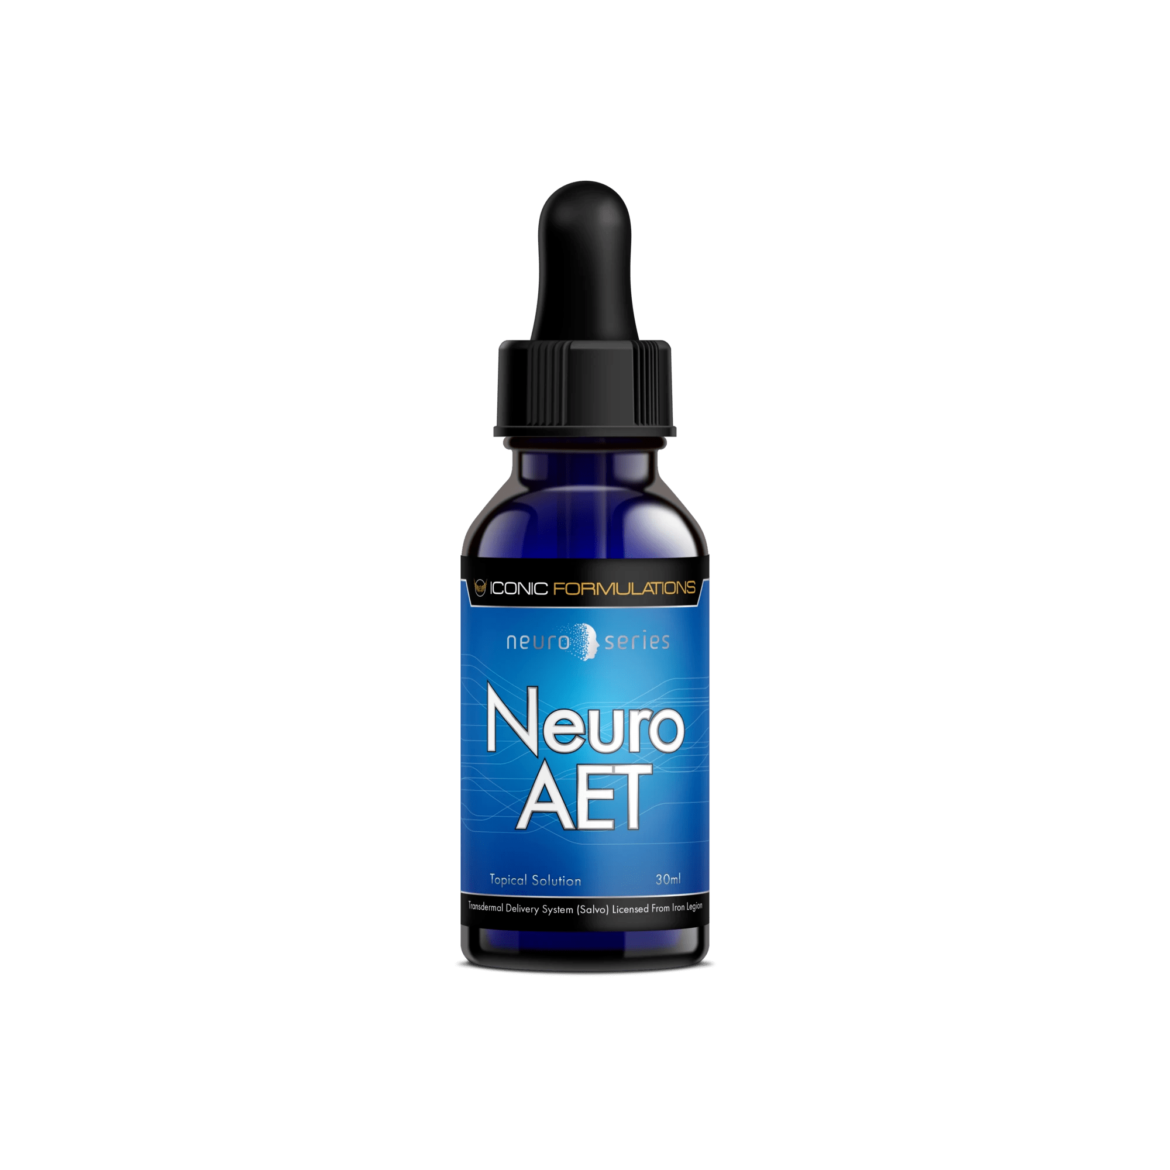 Neuro_Series-Neuro_AET_2000x.png